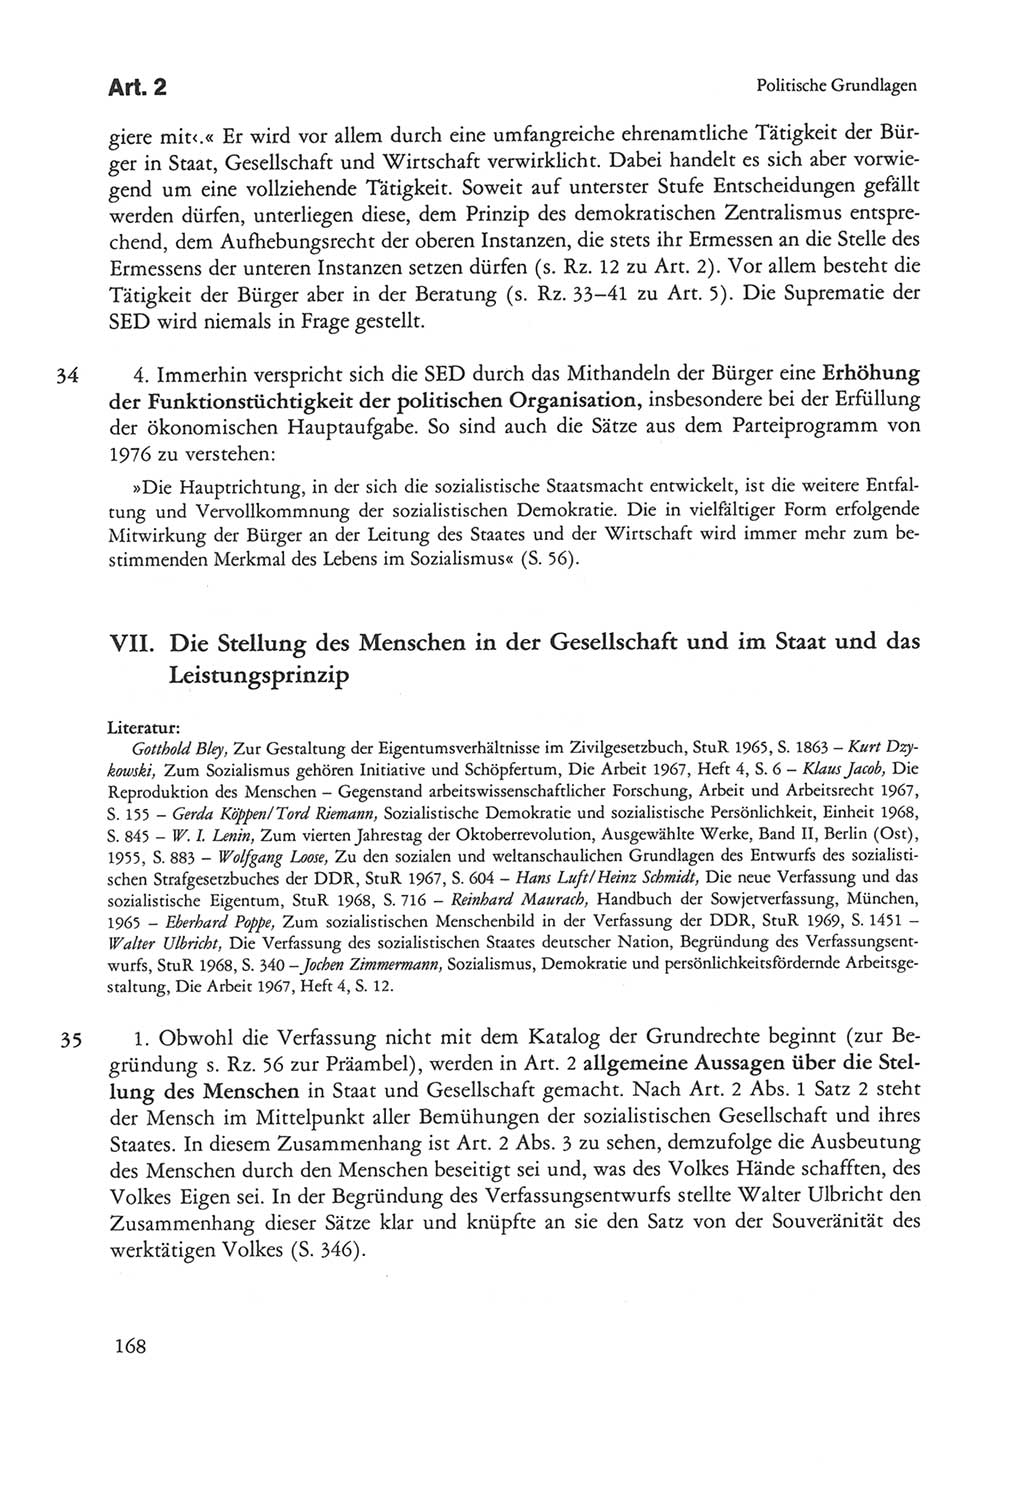 Die sozialistische Verfassung der Deutschen Demokratischen Republik (DDR), Kommentar mit einem Nachtrag 1997, Seite 168 (Soz. Verf. DDR Komm. Nachtr. 1997, S. 168)